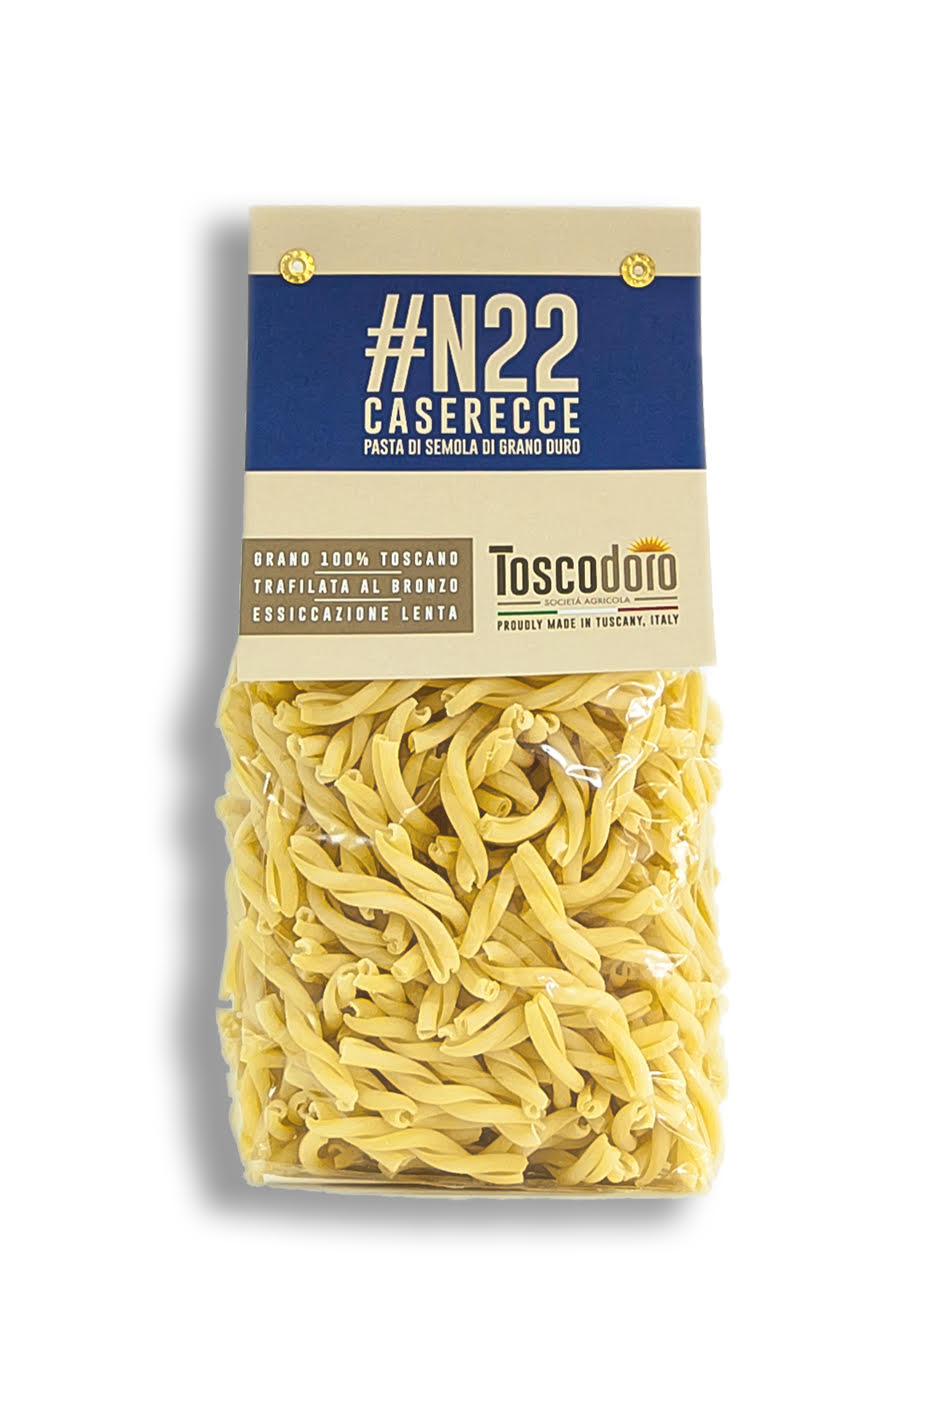 Caserecce #N22